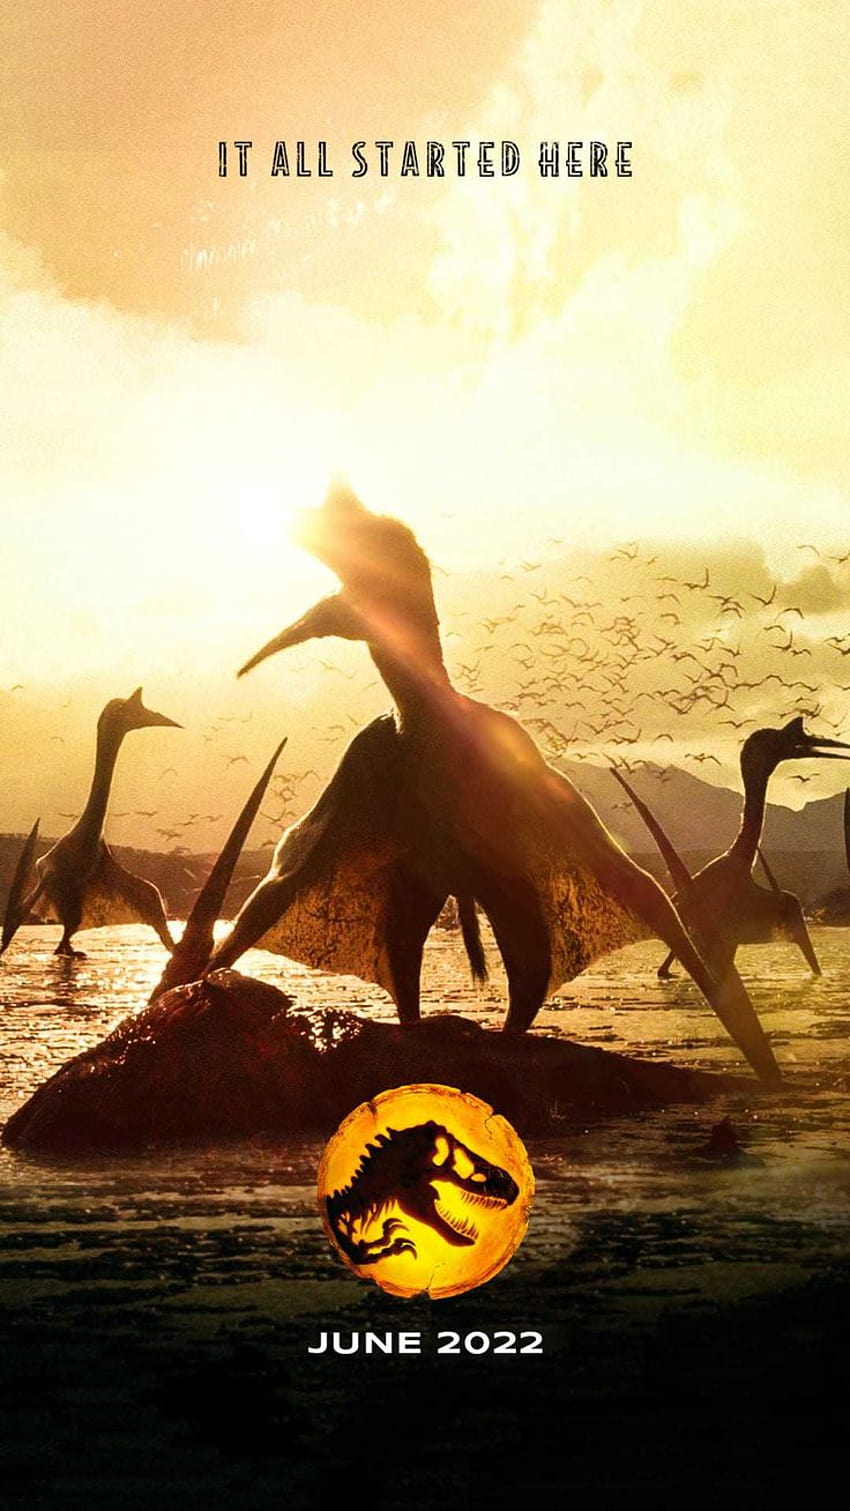 Jurassic World Dominion Descubre más Dominion Poster, Jurassic World, Jurassic World… en 2022, jurassic world dominio 2022 fondo de pantalla del teléfono